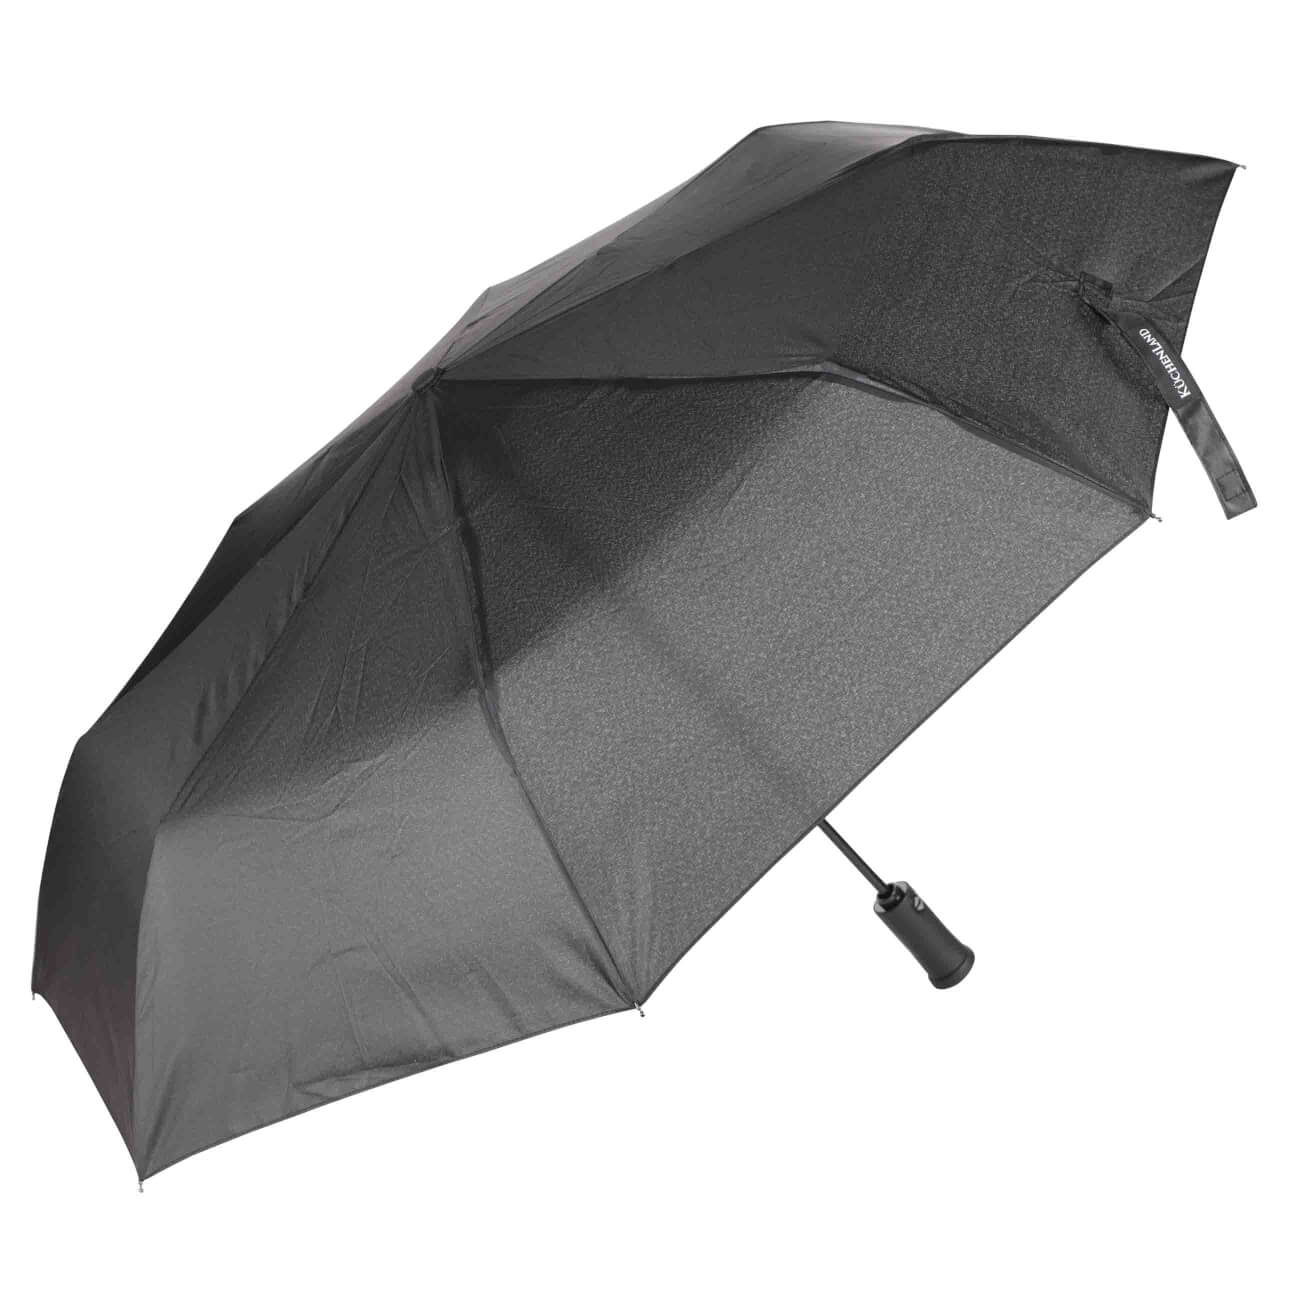 Зонт, 59 см, складной, автоматический, с фонариком, эпонж, черный, Ray light зонт 59 см складной автоматический с фонариком эпонж ray light